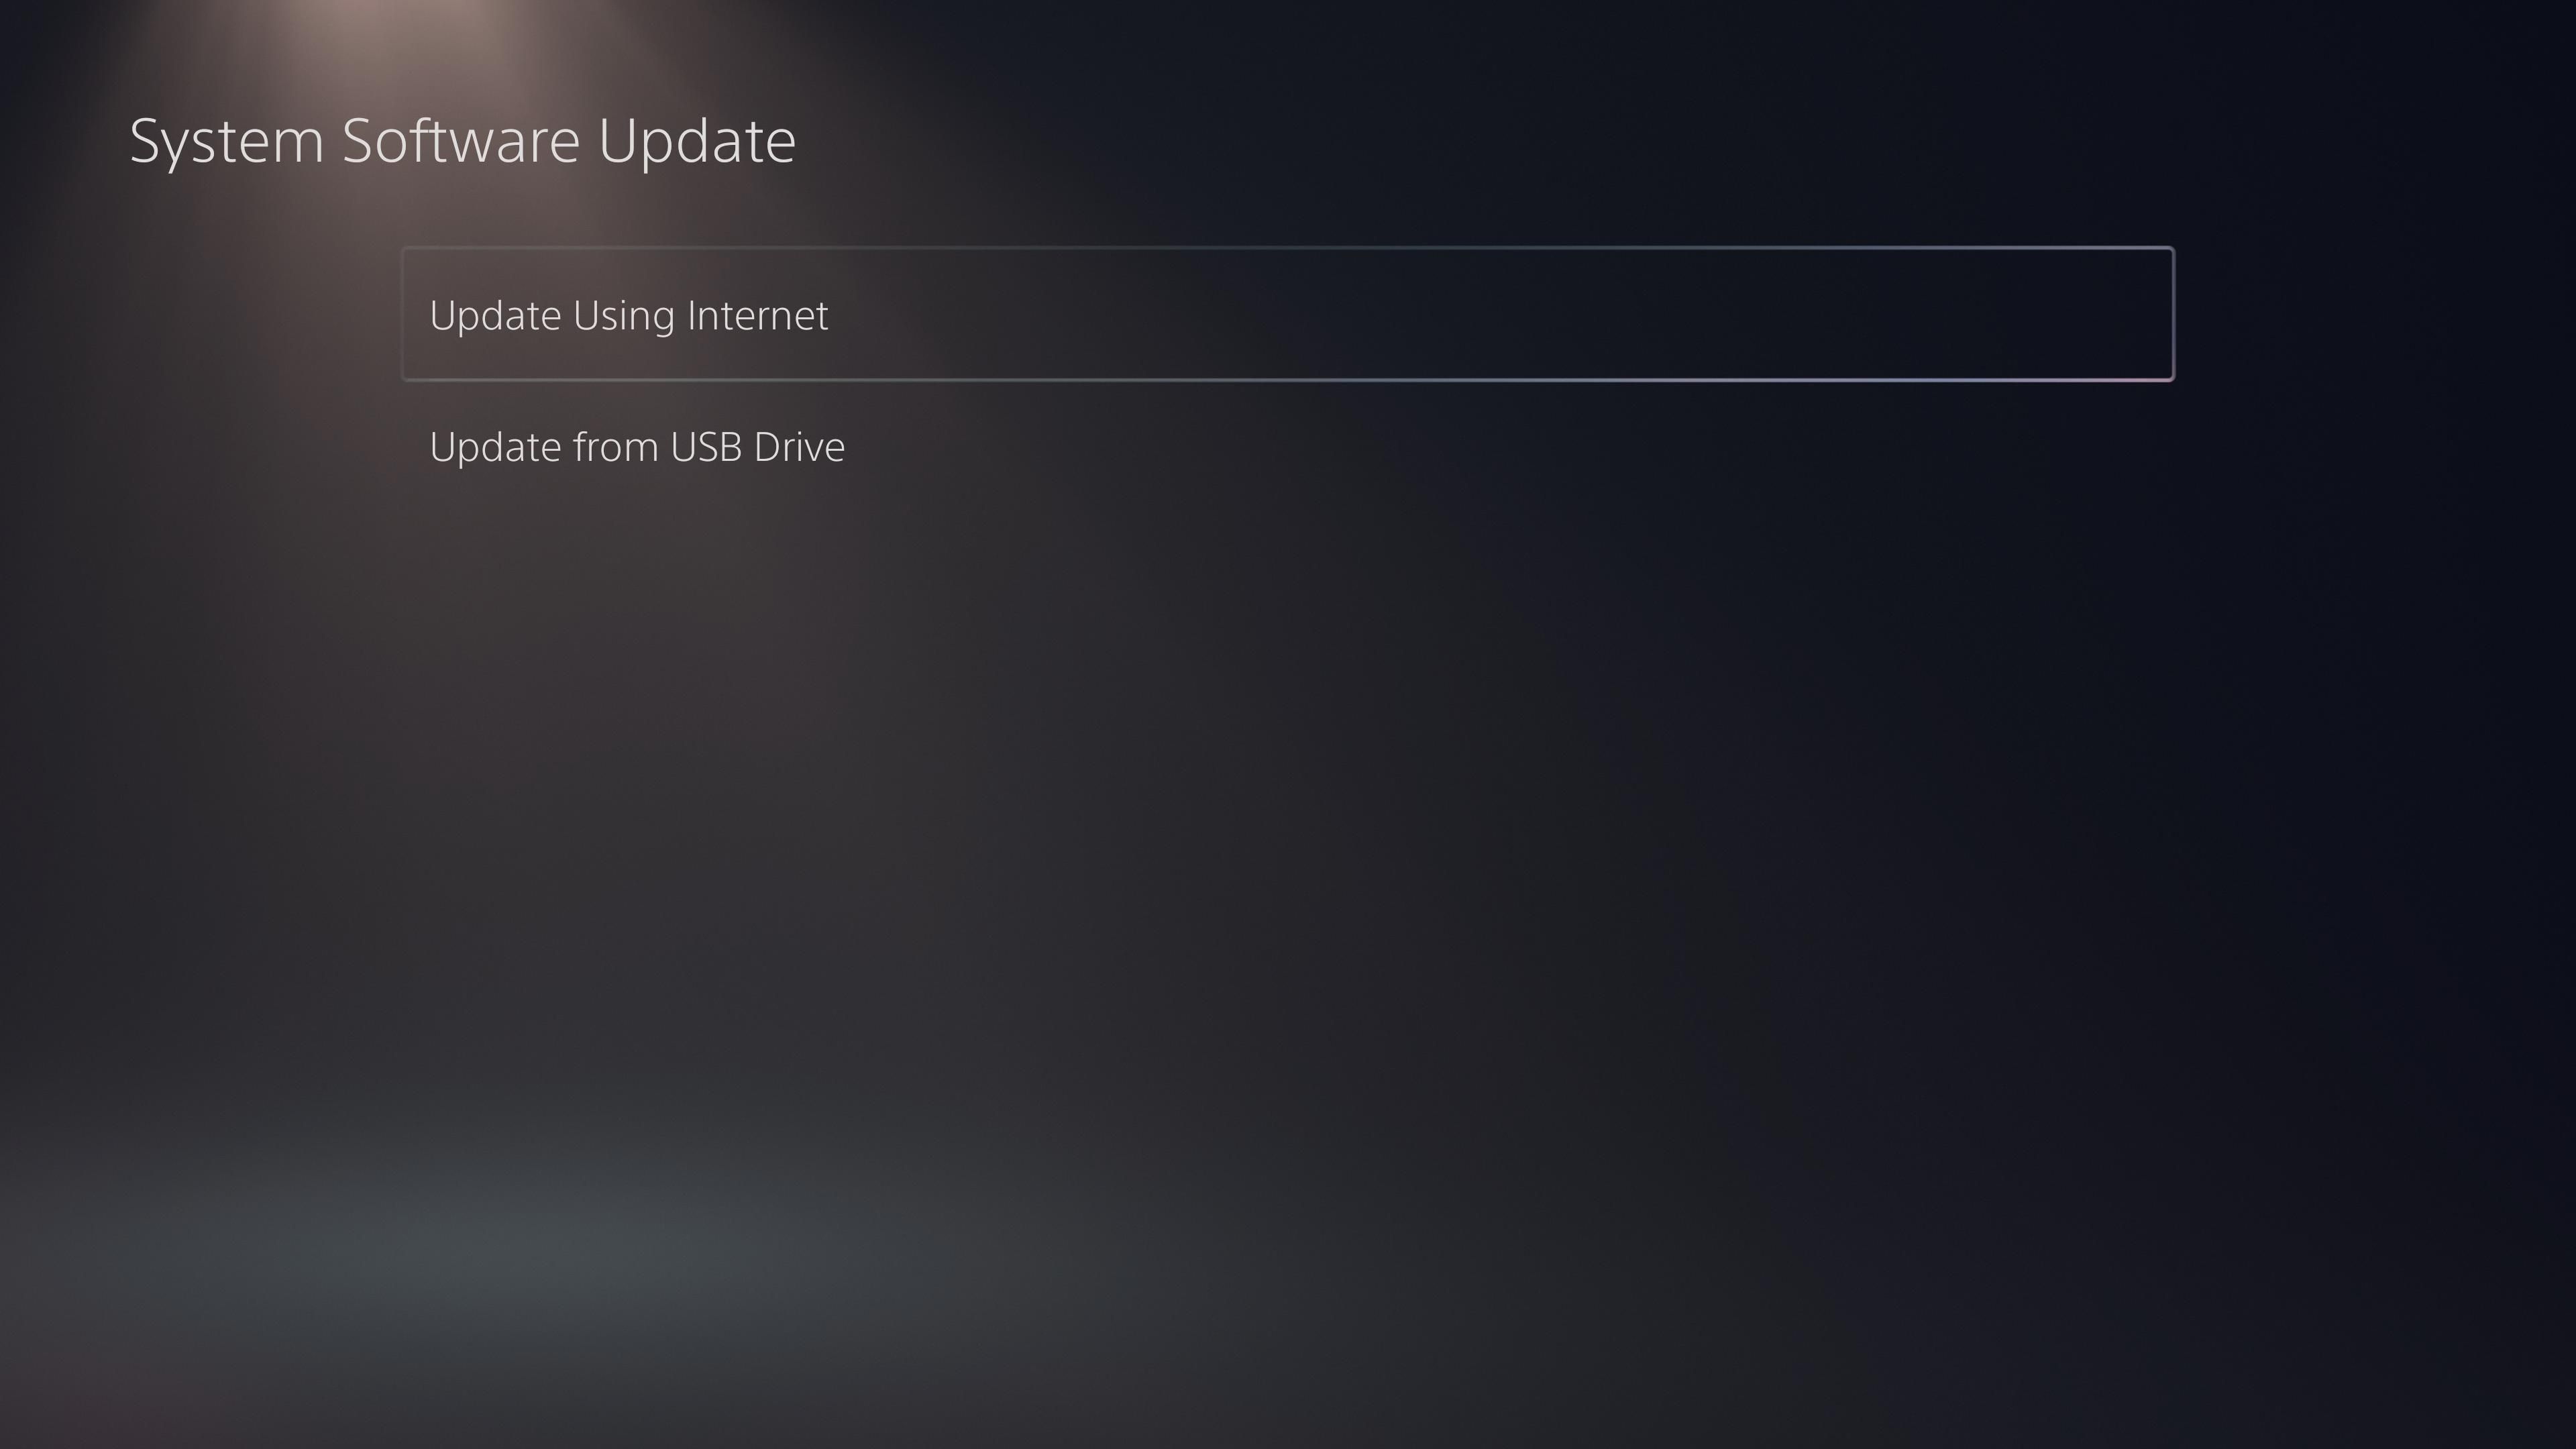 PS5 Update Using Internet - Come aggiornare la tua PlayStation 5